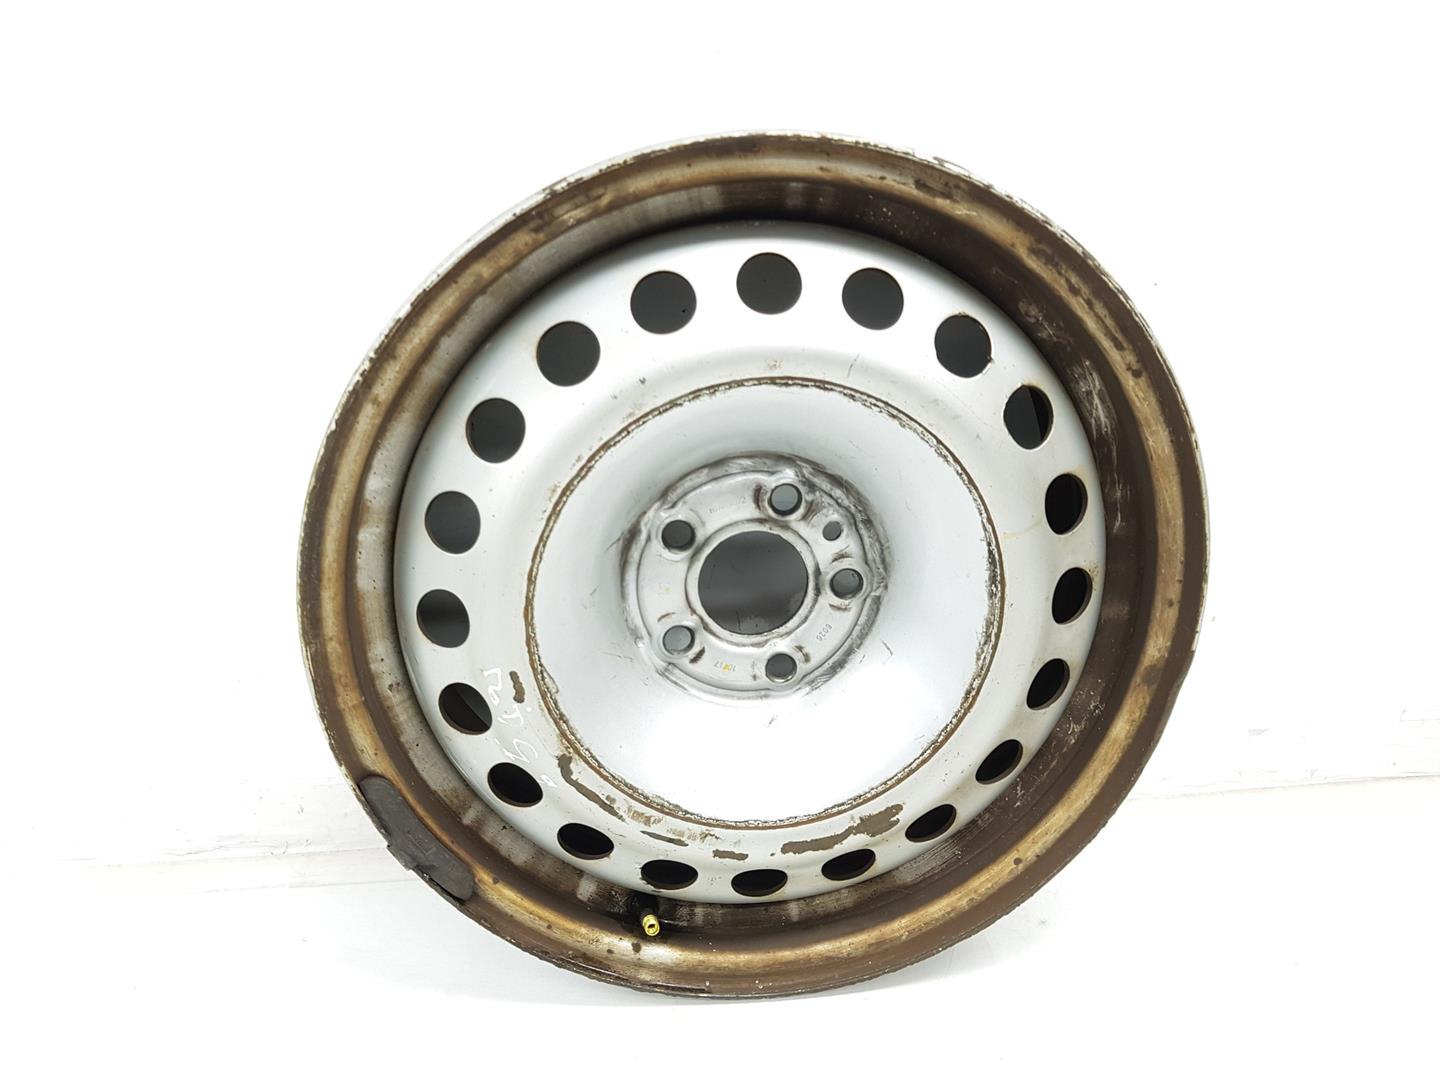 OPEL Combo D (2011-2020) Wheel 95518224, 6JX16, 16PULGADAS 24220664